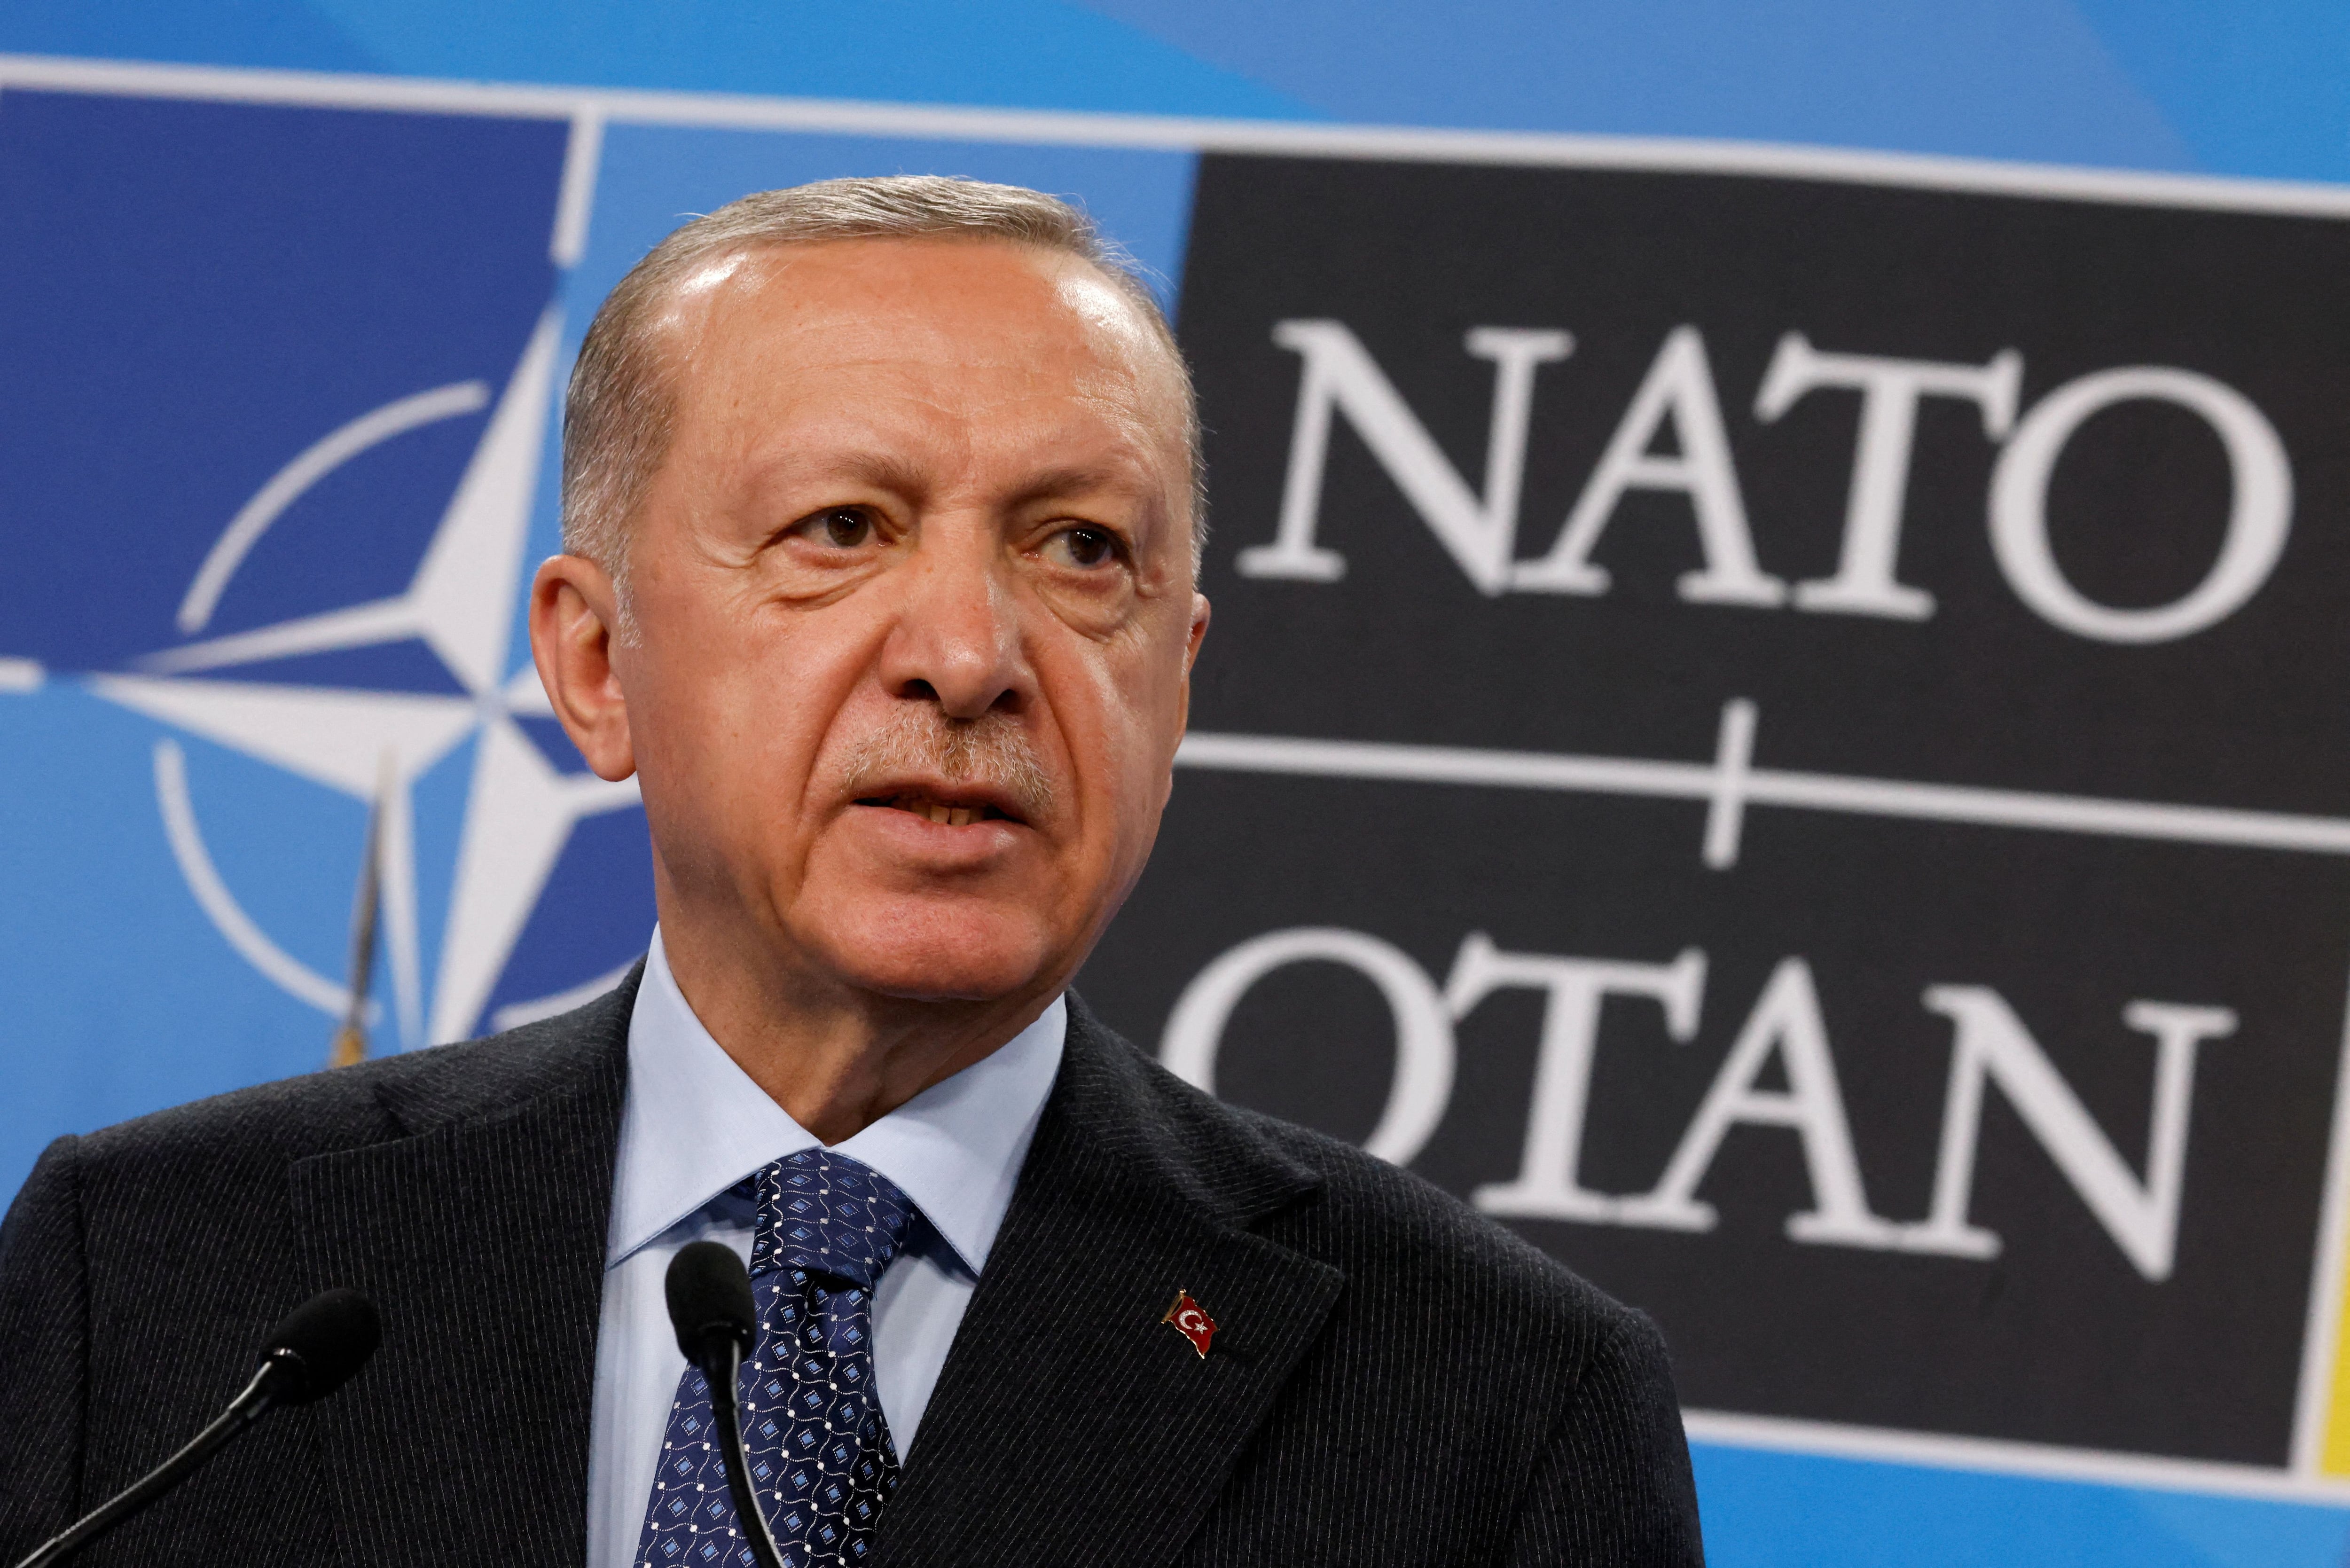 El partido oficialista de Recep Tayyip Erdogan apoyó el ingreso de Suecia en la OTAN (REUTERS/Yves Herman)